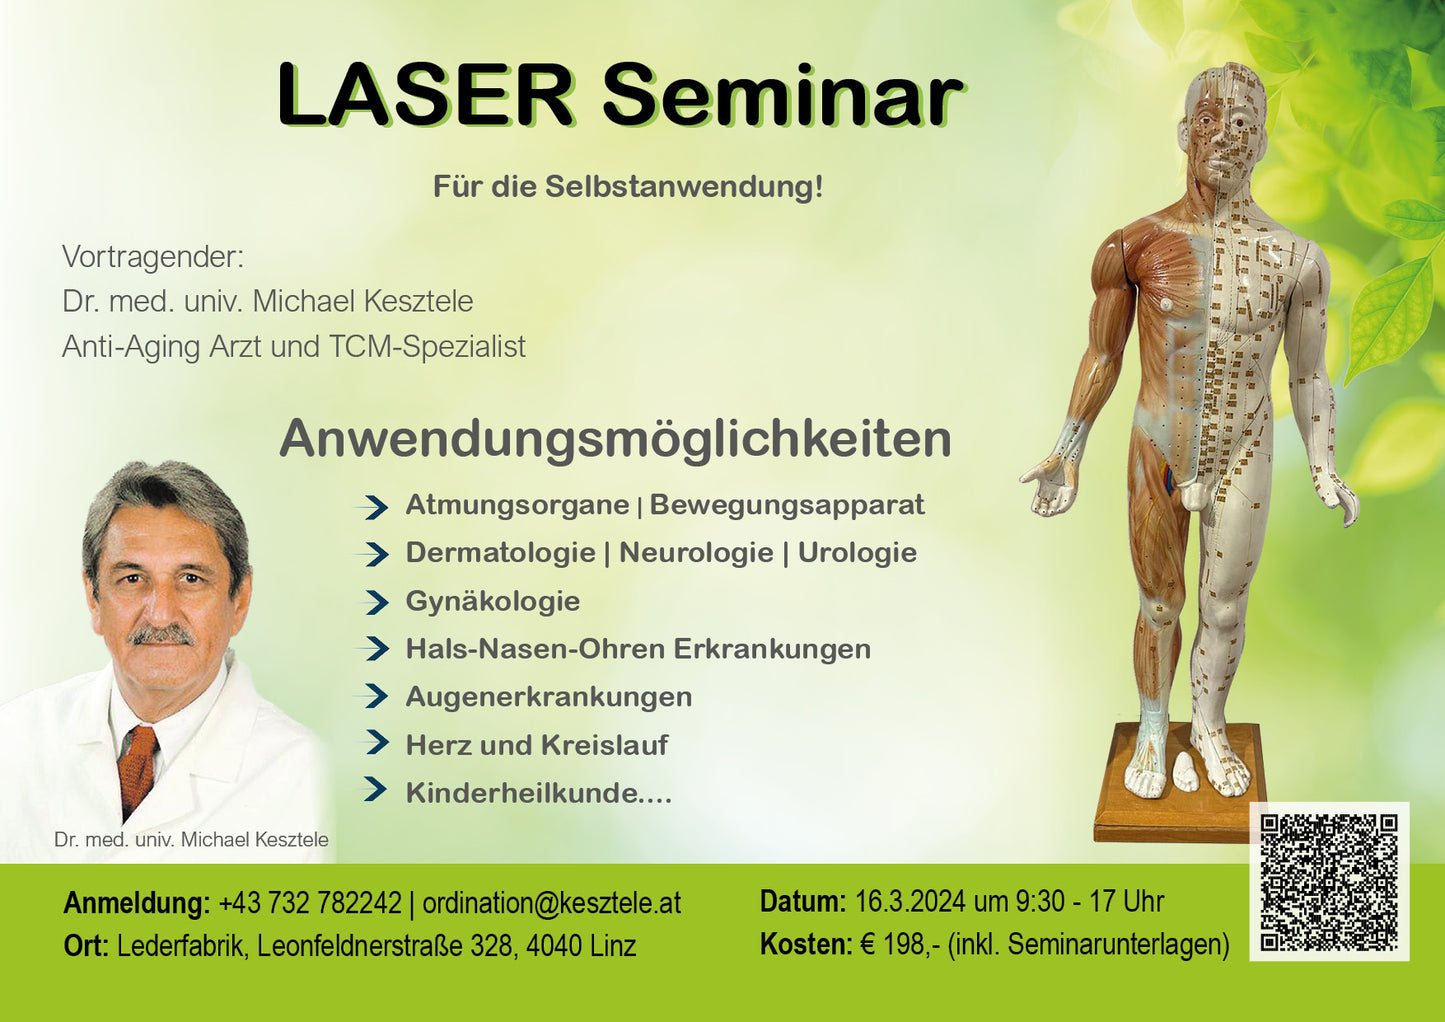 Laser Seminar - für die Selbstanwendung